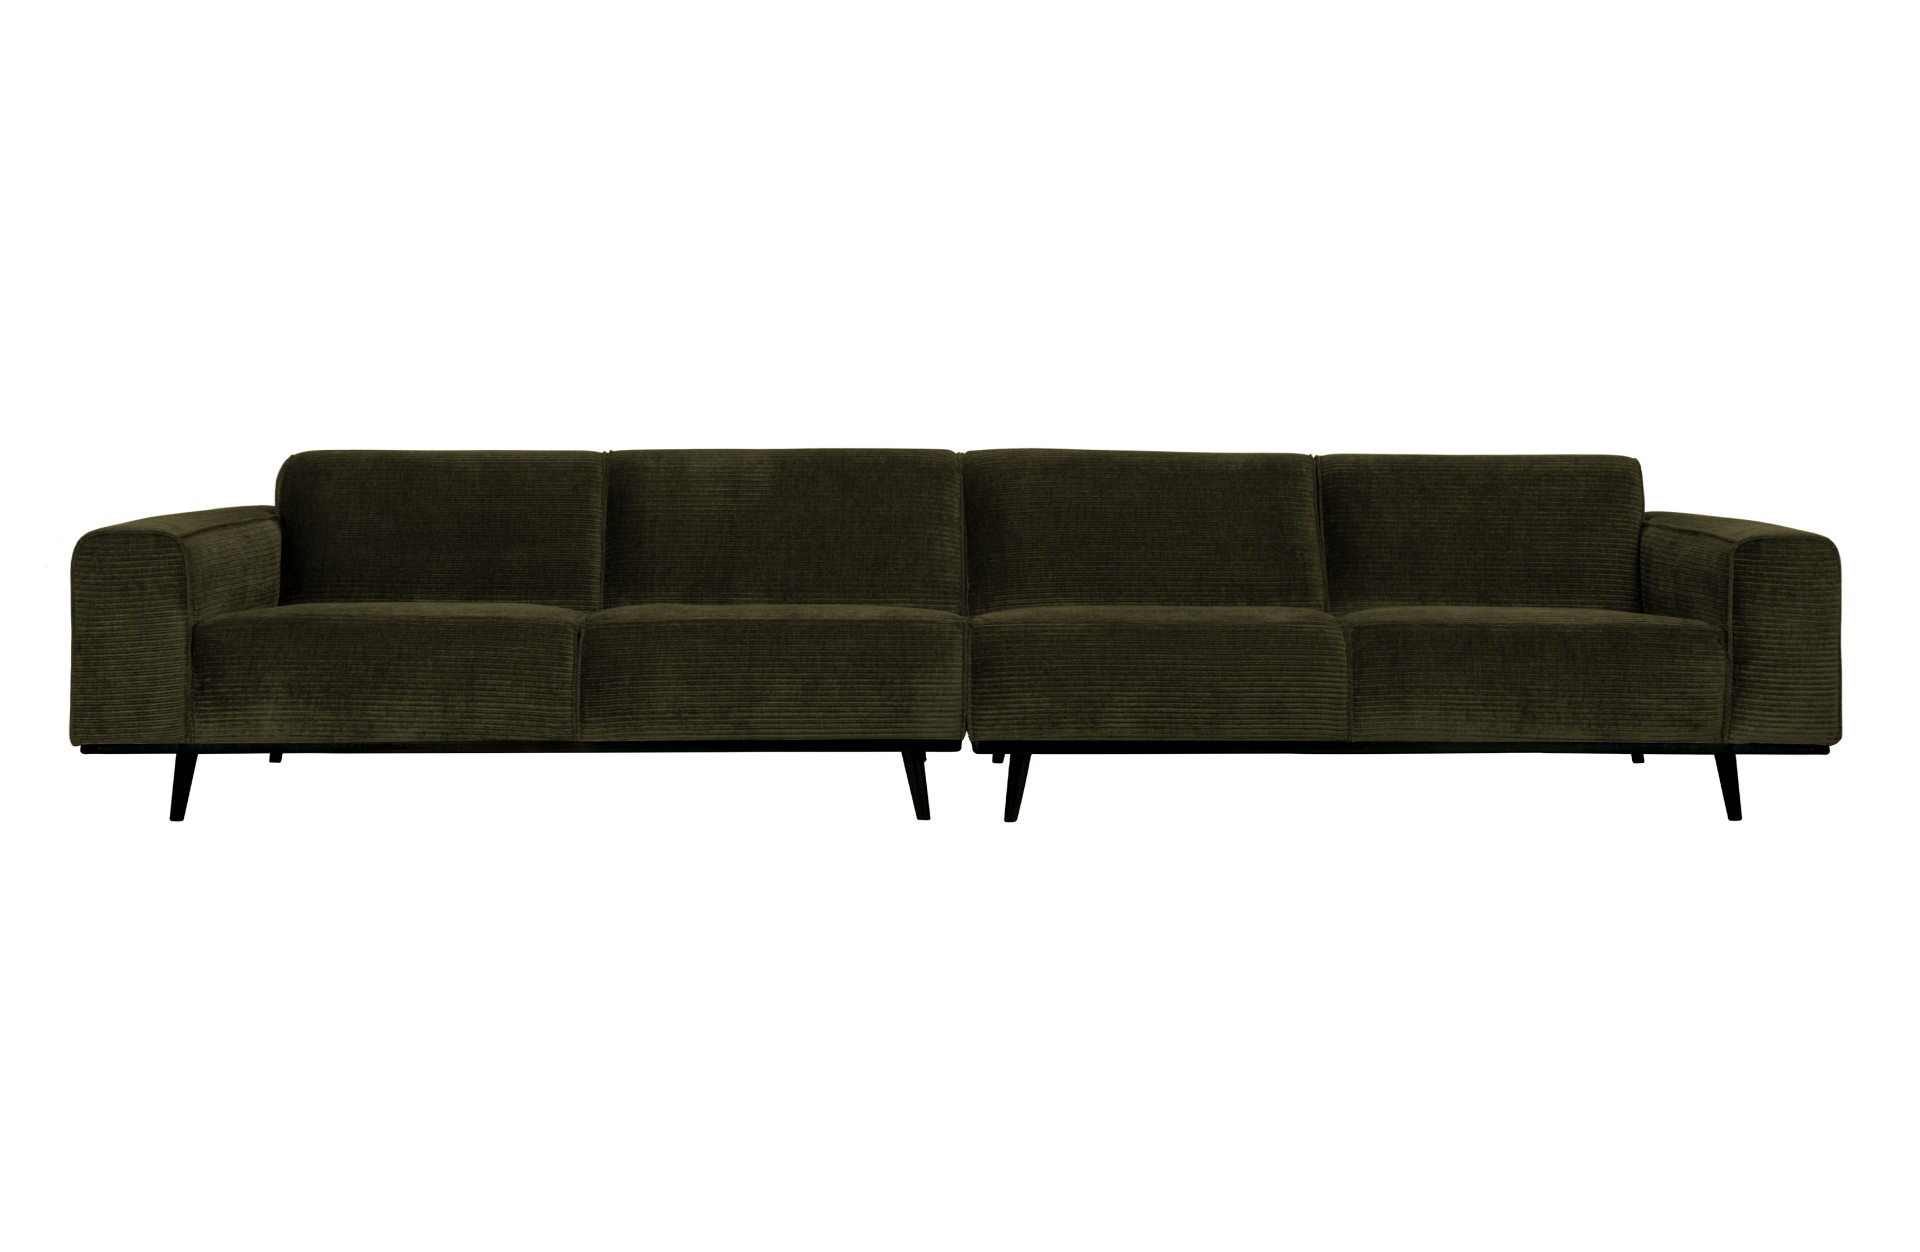 Das Sofa Statement überzeugt mit seinem modernen Design. Gefertigt wurde es aus gewebten Jacquard, welches einen Olive Farbton besitzen. Das Gestell ist aus Birkenholz und hat eine schwarze Farbe. Das Sofa hat eine Breite von 372 cm.